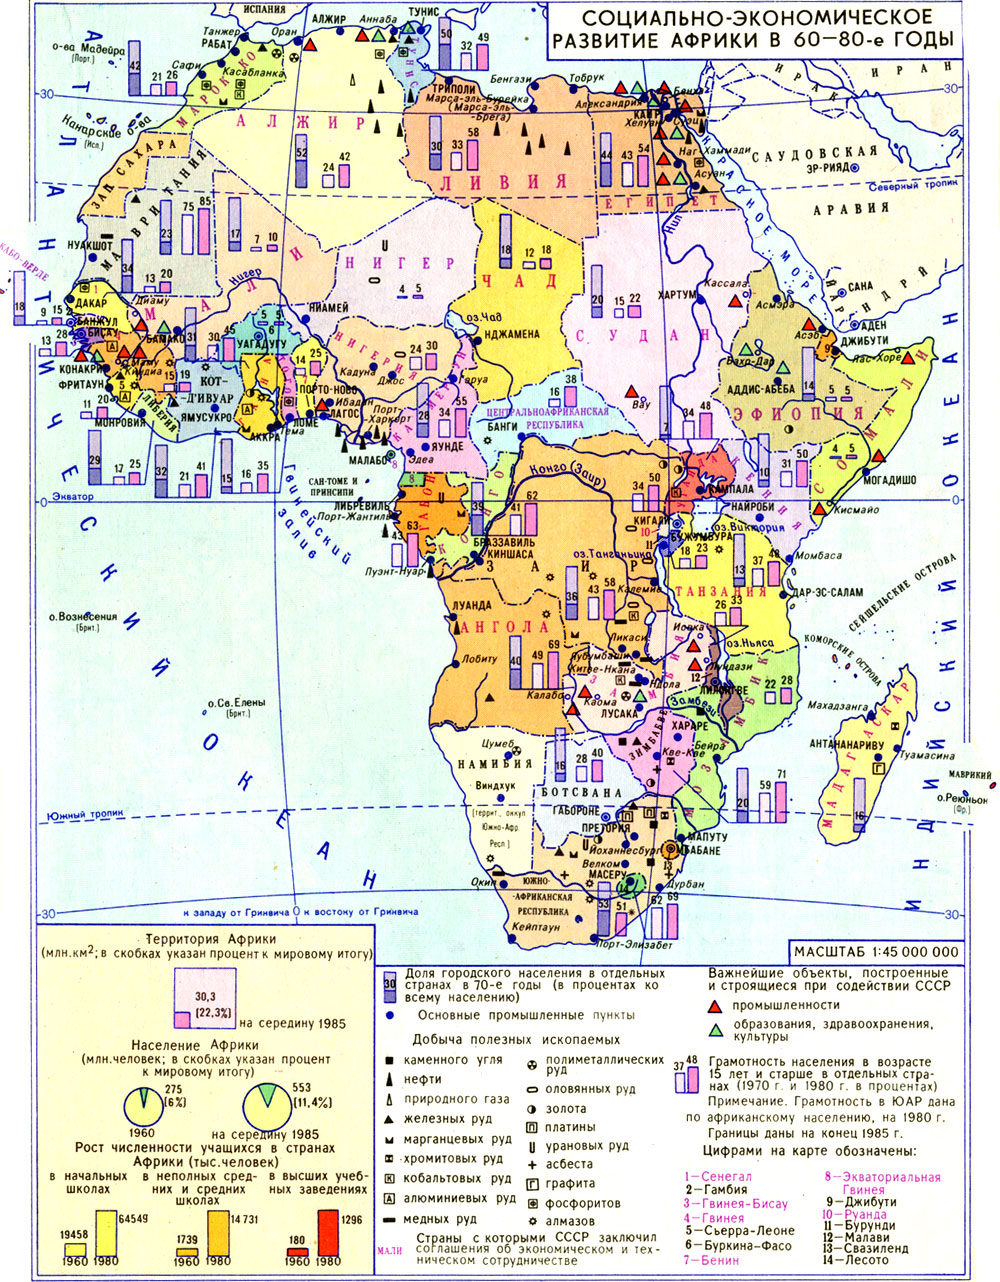 Социально-экономическое развитие Африки в 60-80-е гг.